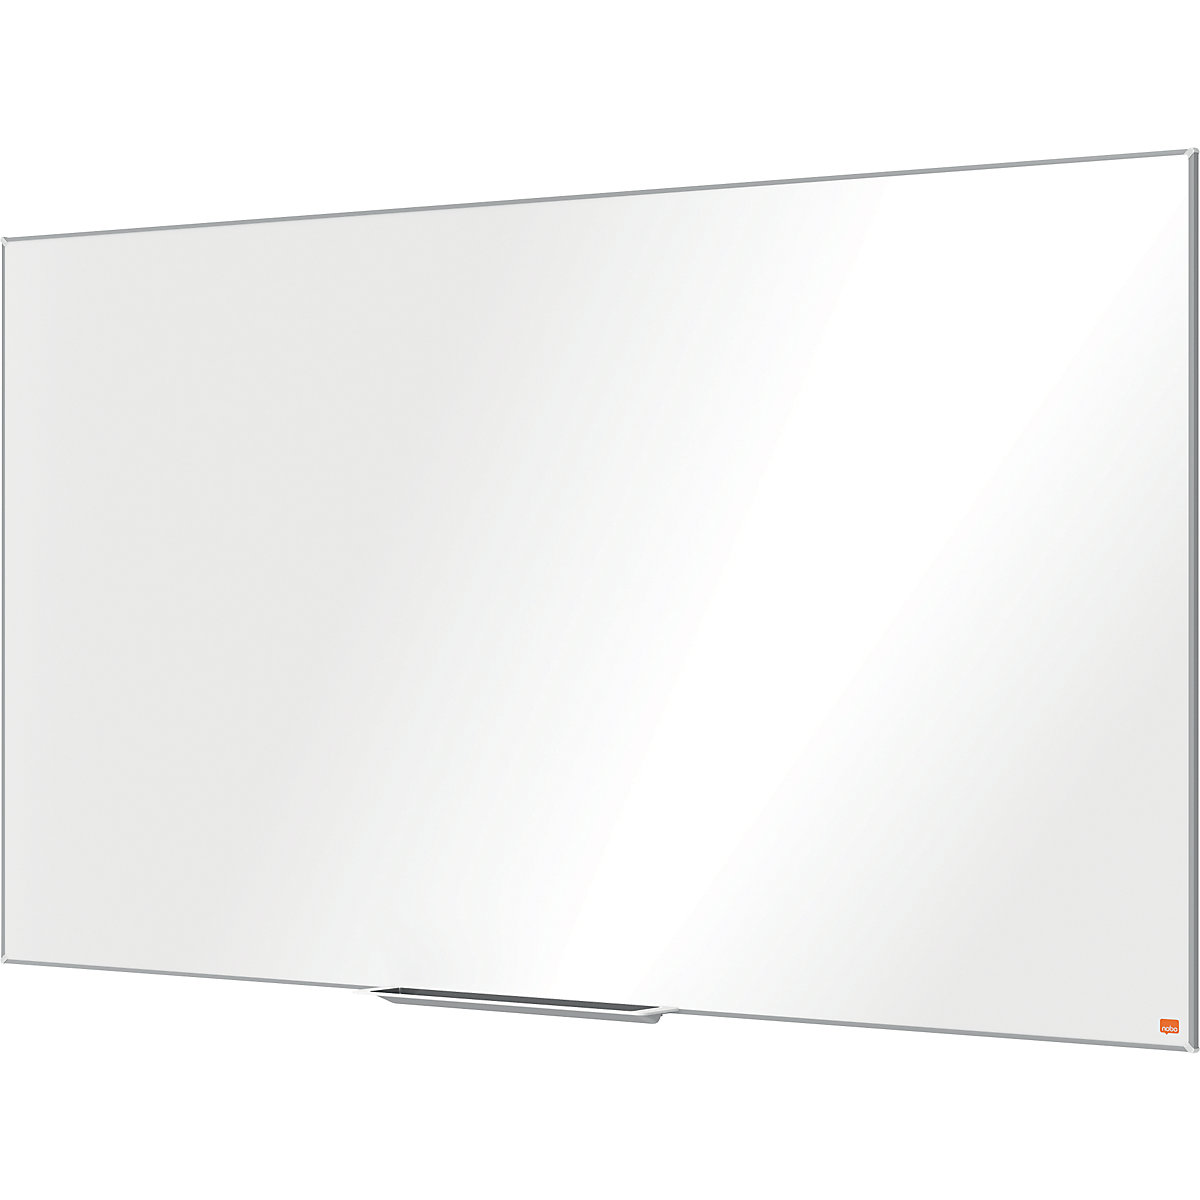 PRO whiteboard – nobo, widescreen format, enamelled steel, 70'', WxH 1554 x 876 mm-5